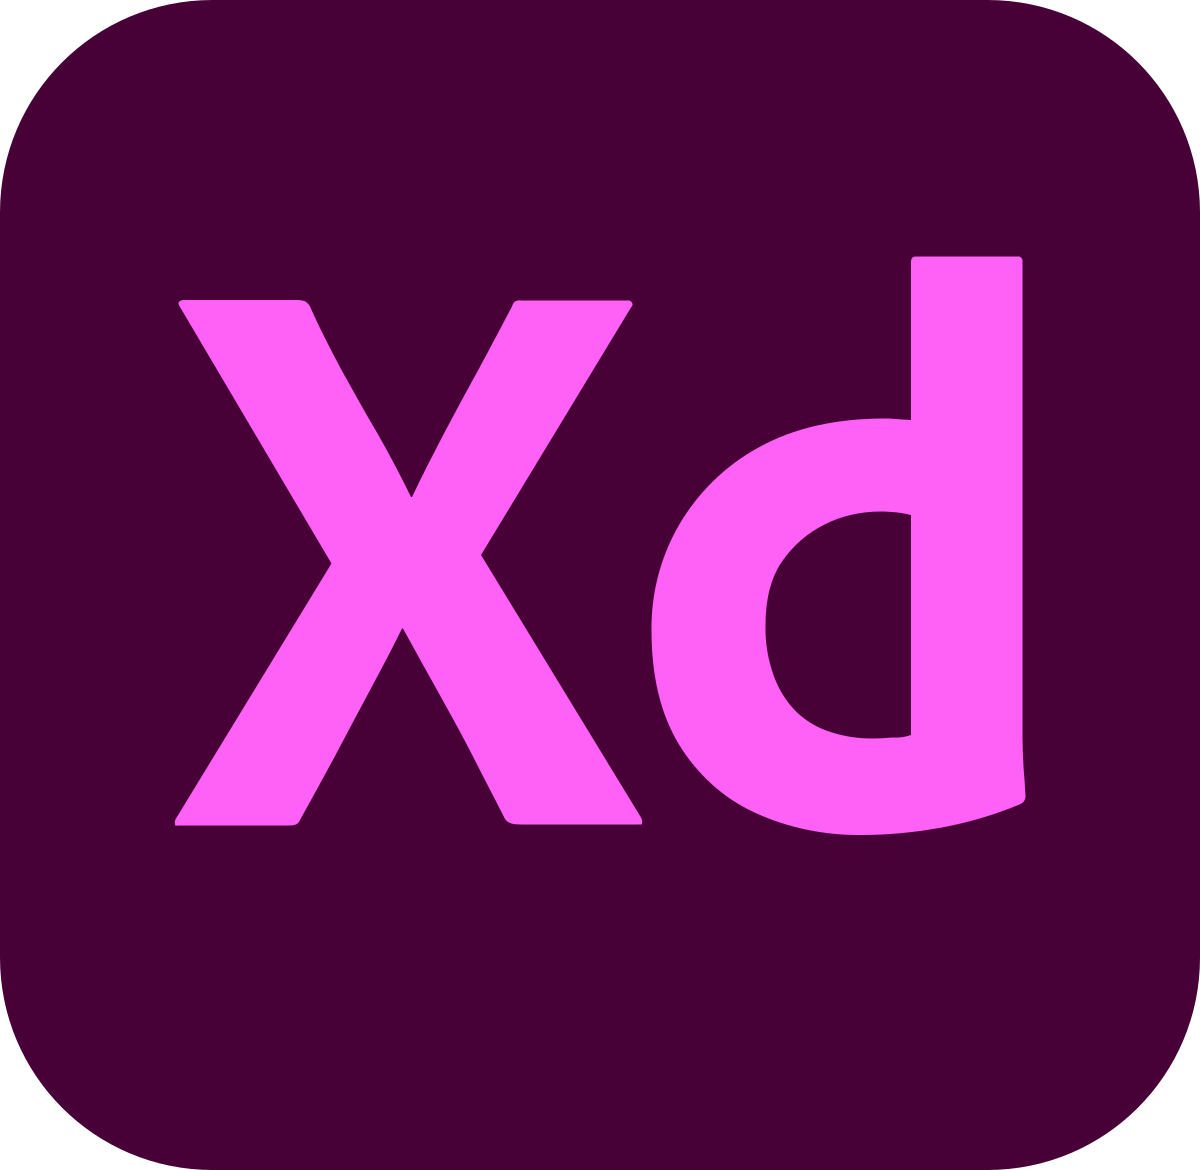 Adobe XD Single App